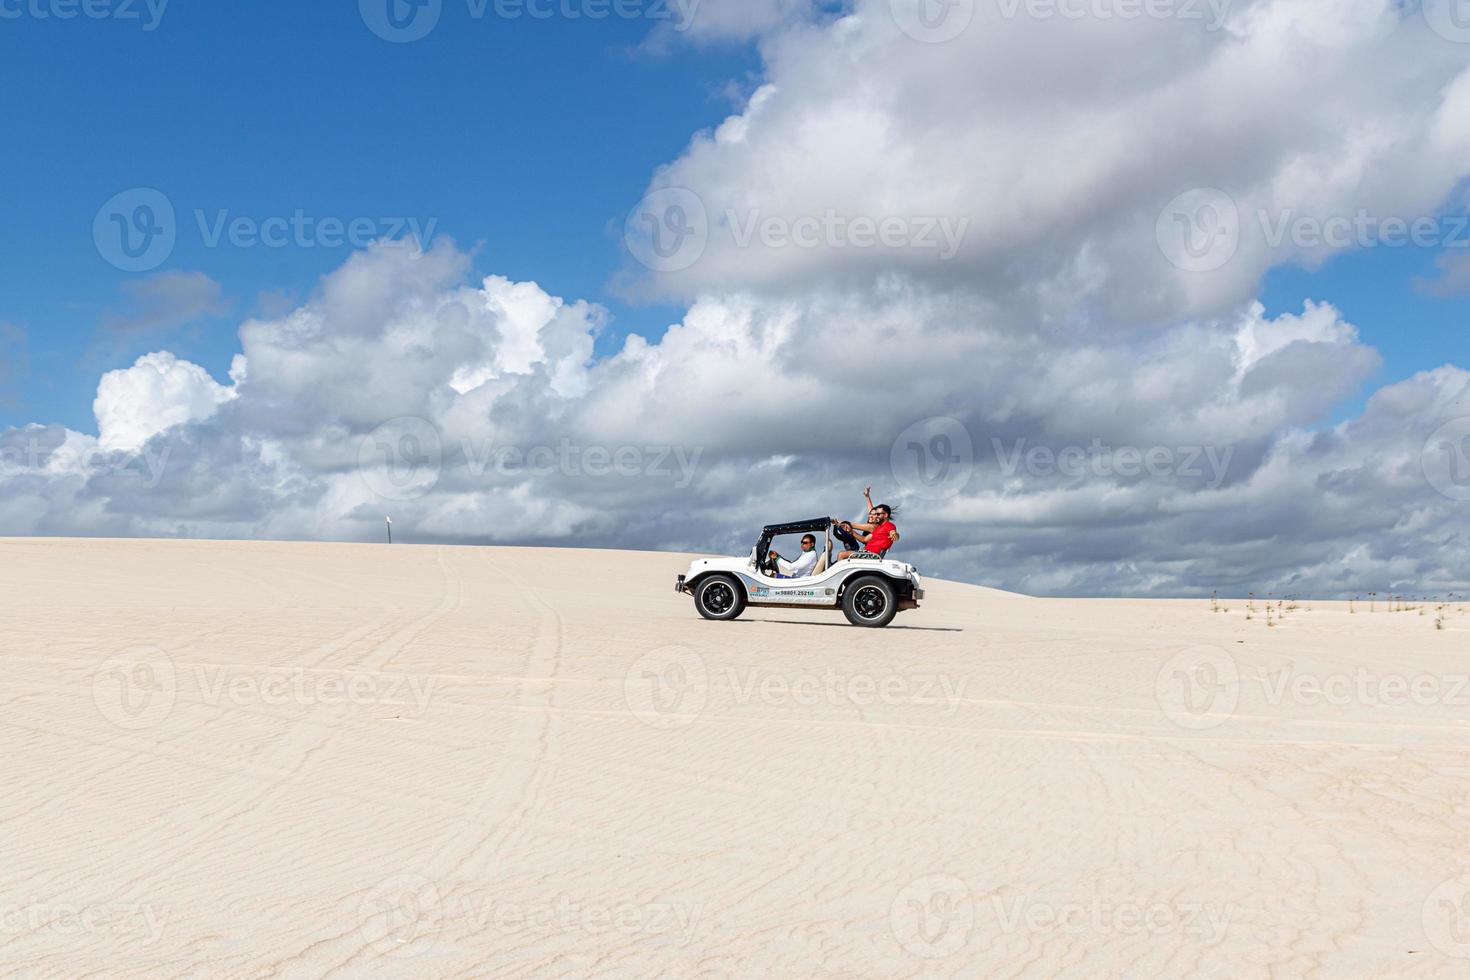 natal, brazilië, mei 2019 - buggy auto in het zand foto